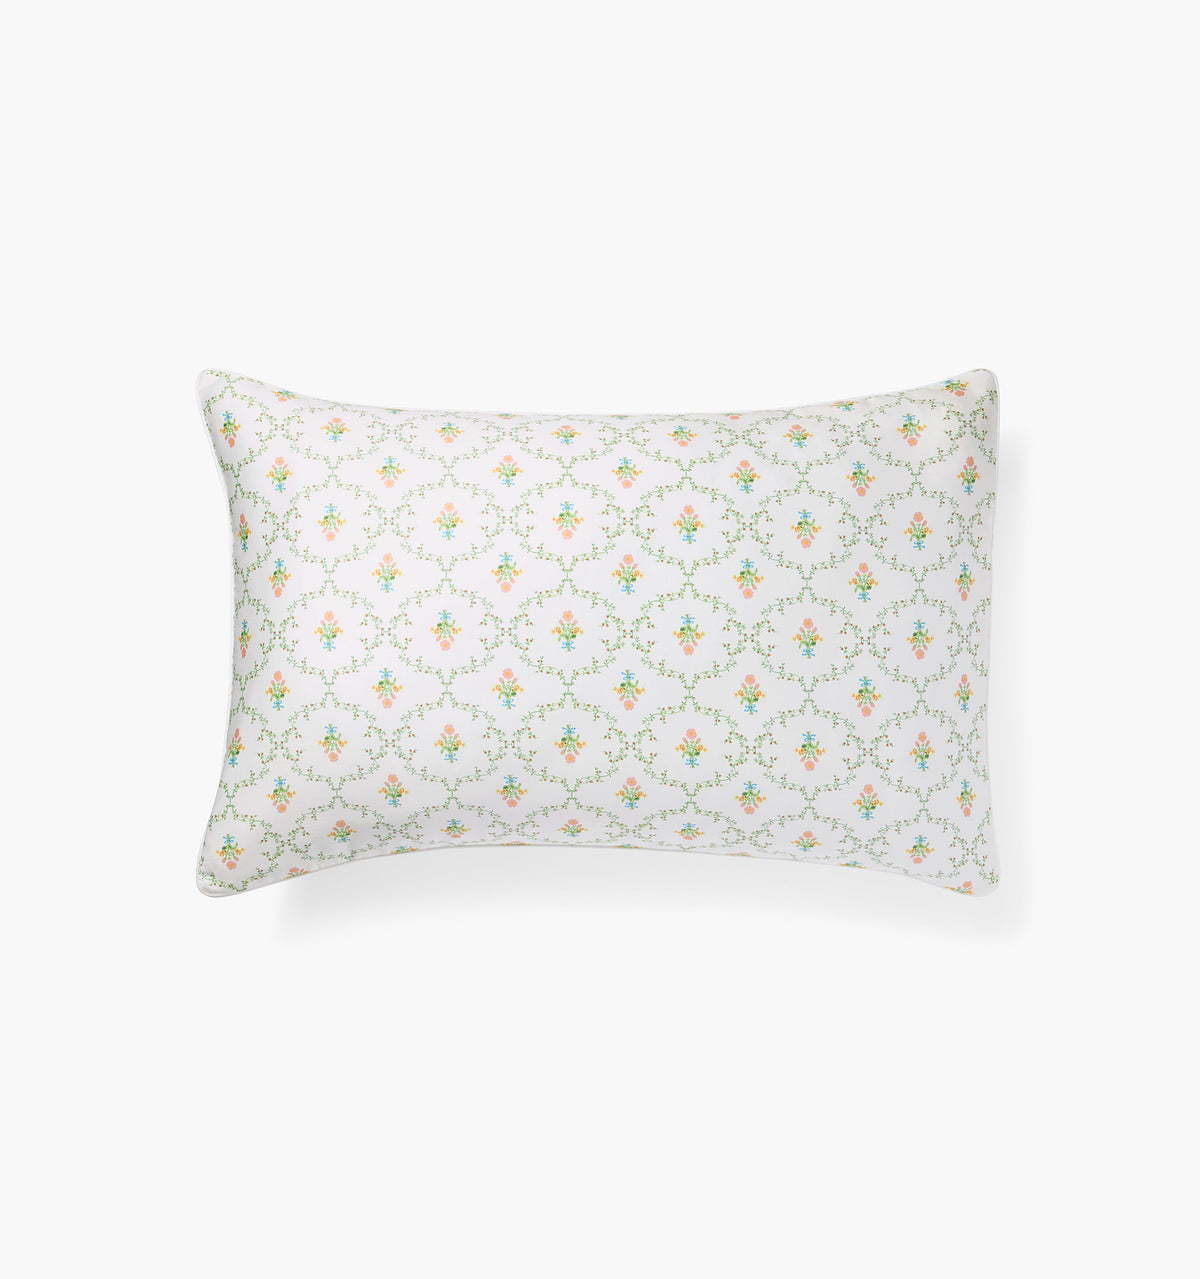 Pastel Trellis Pillowcase Set color:pastel trellis